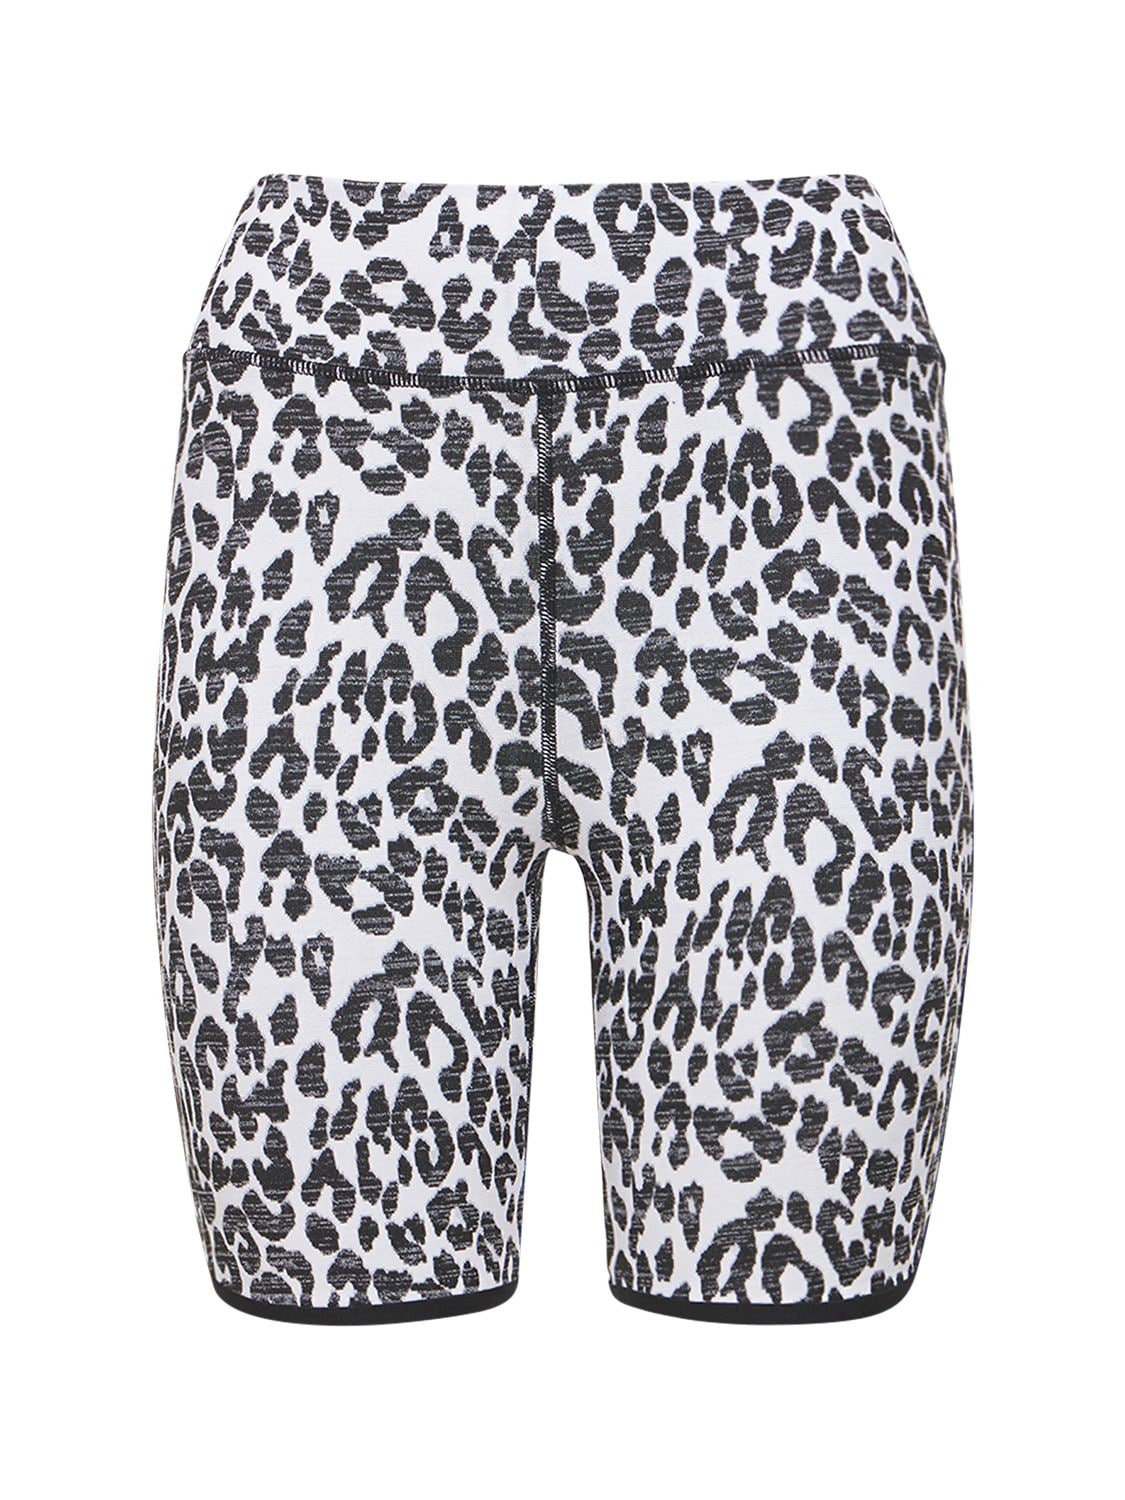 THE UPSIDE 豹纹印花短裤,73IE7X009-U05PVYBMRU9QQVJE0